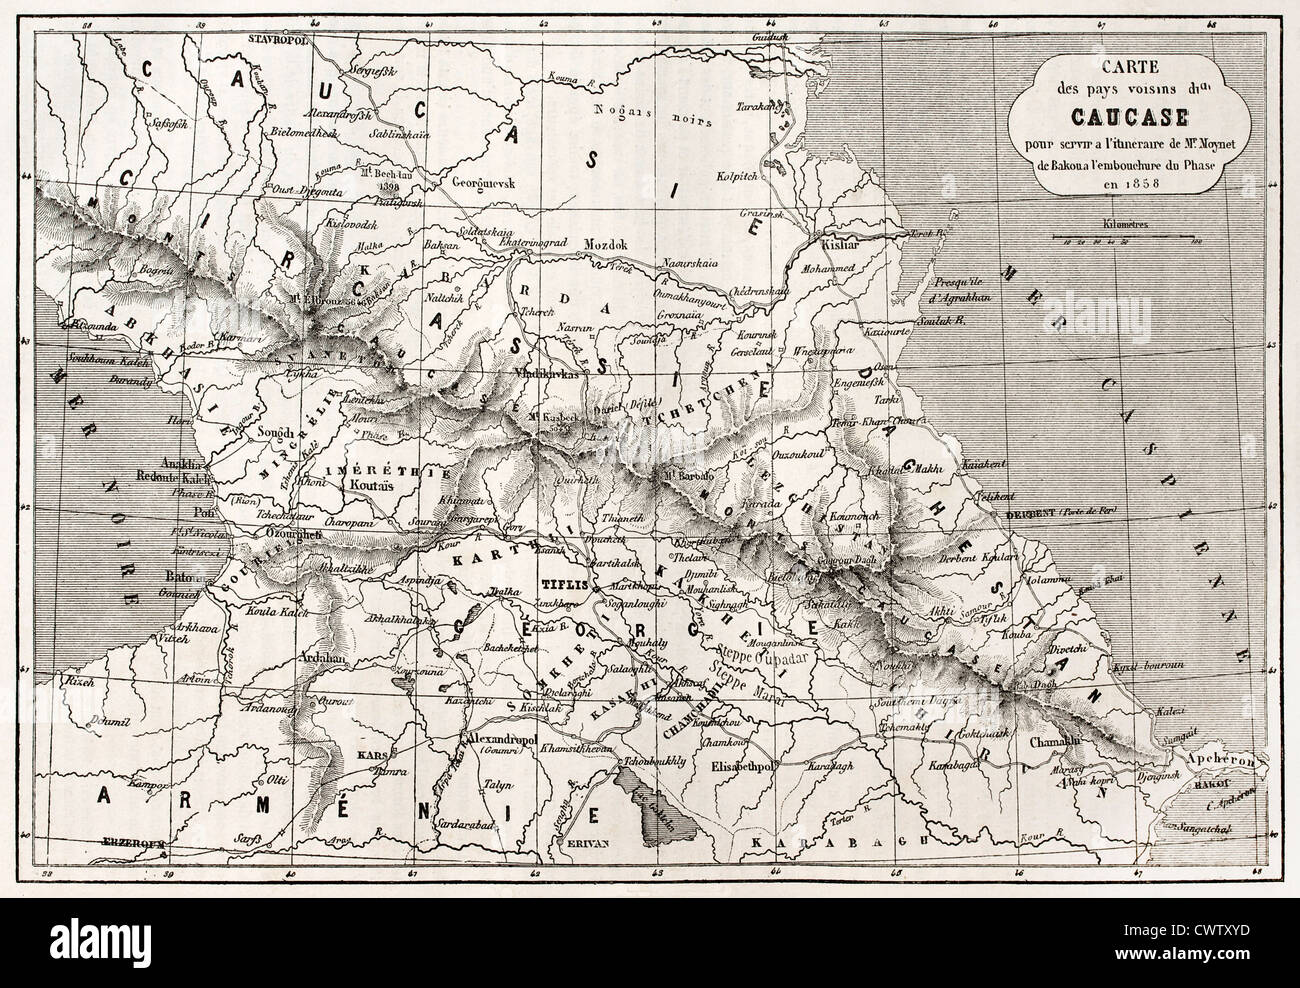 Caucasus old map Stock Photo